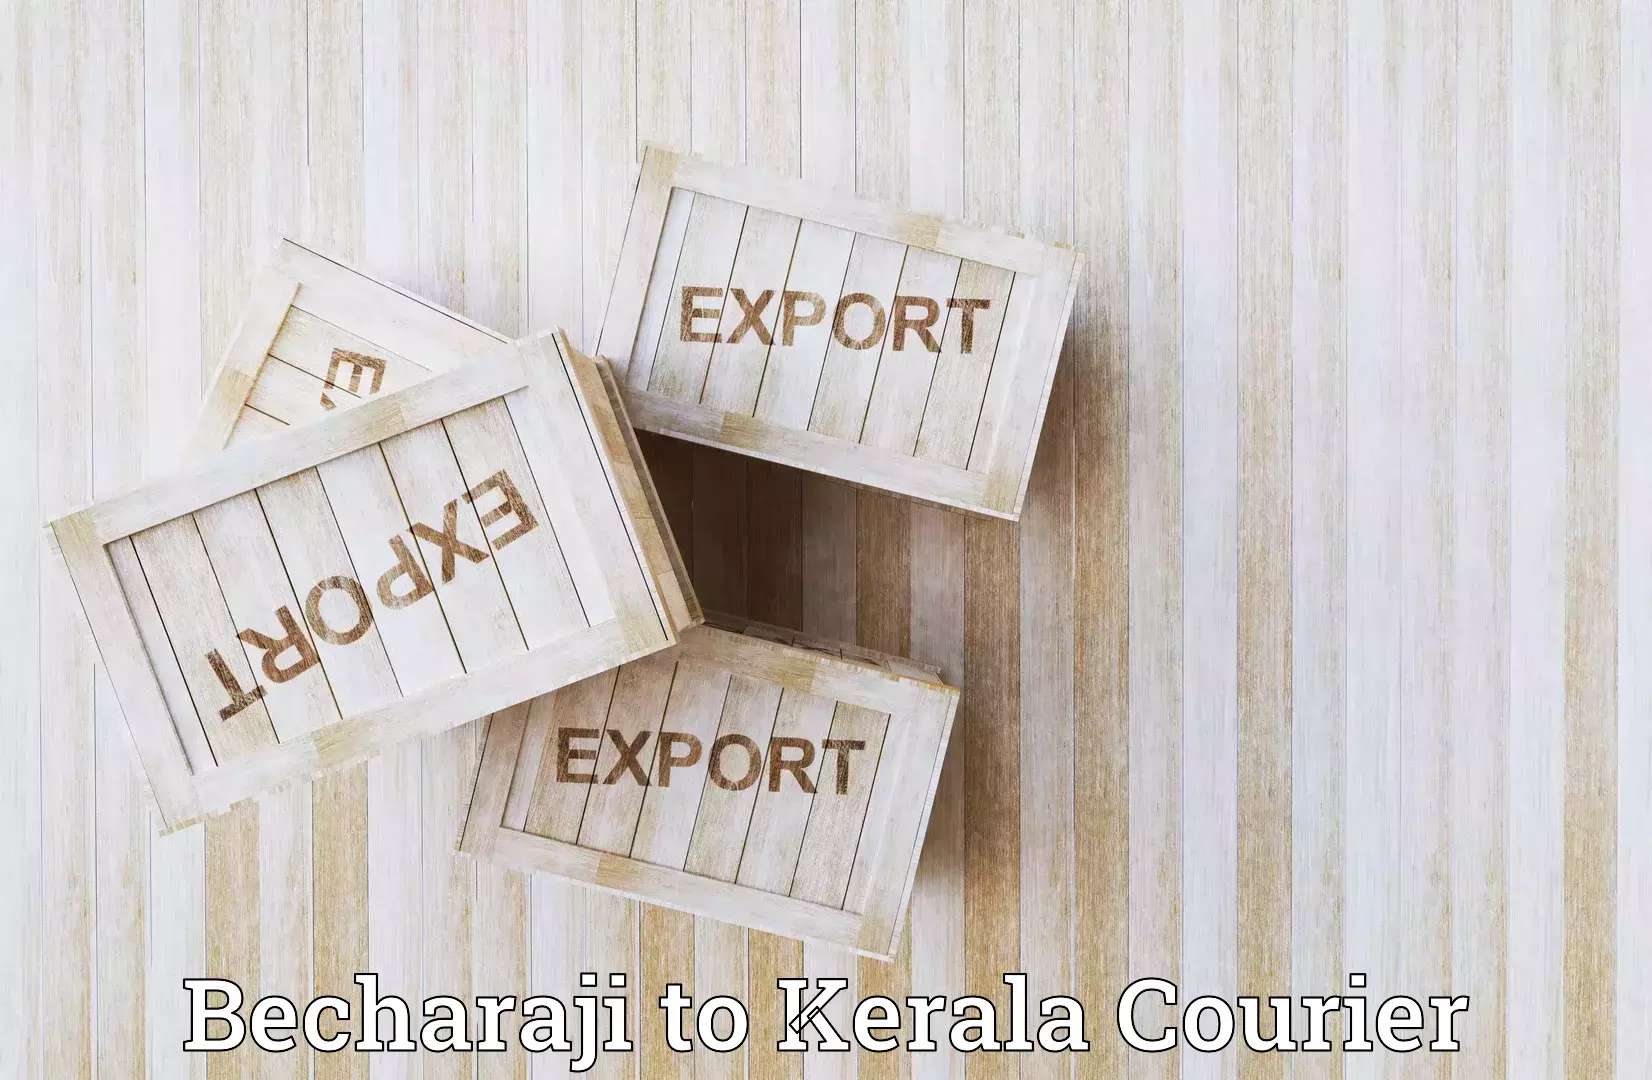 Seamless shipping experience in Becharaji to Thiruvananthapuram